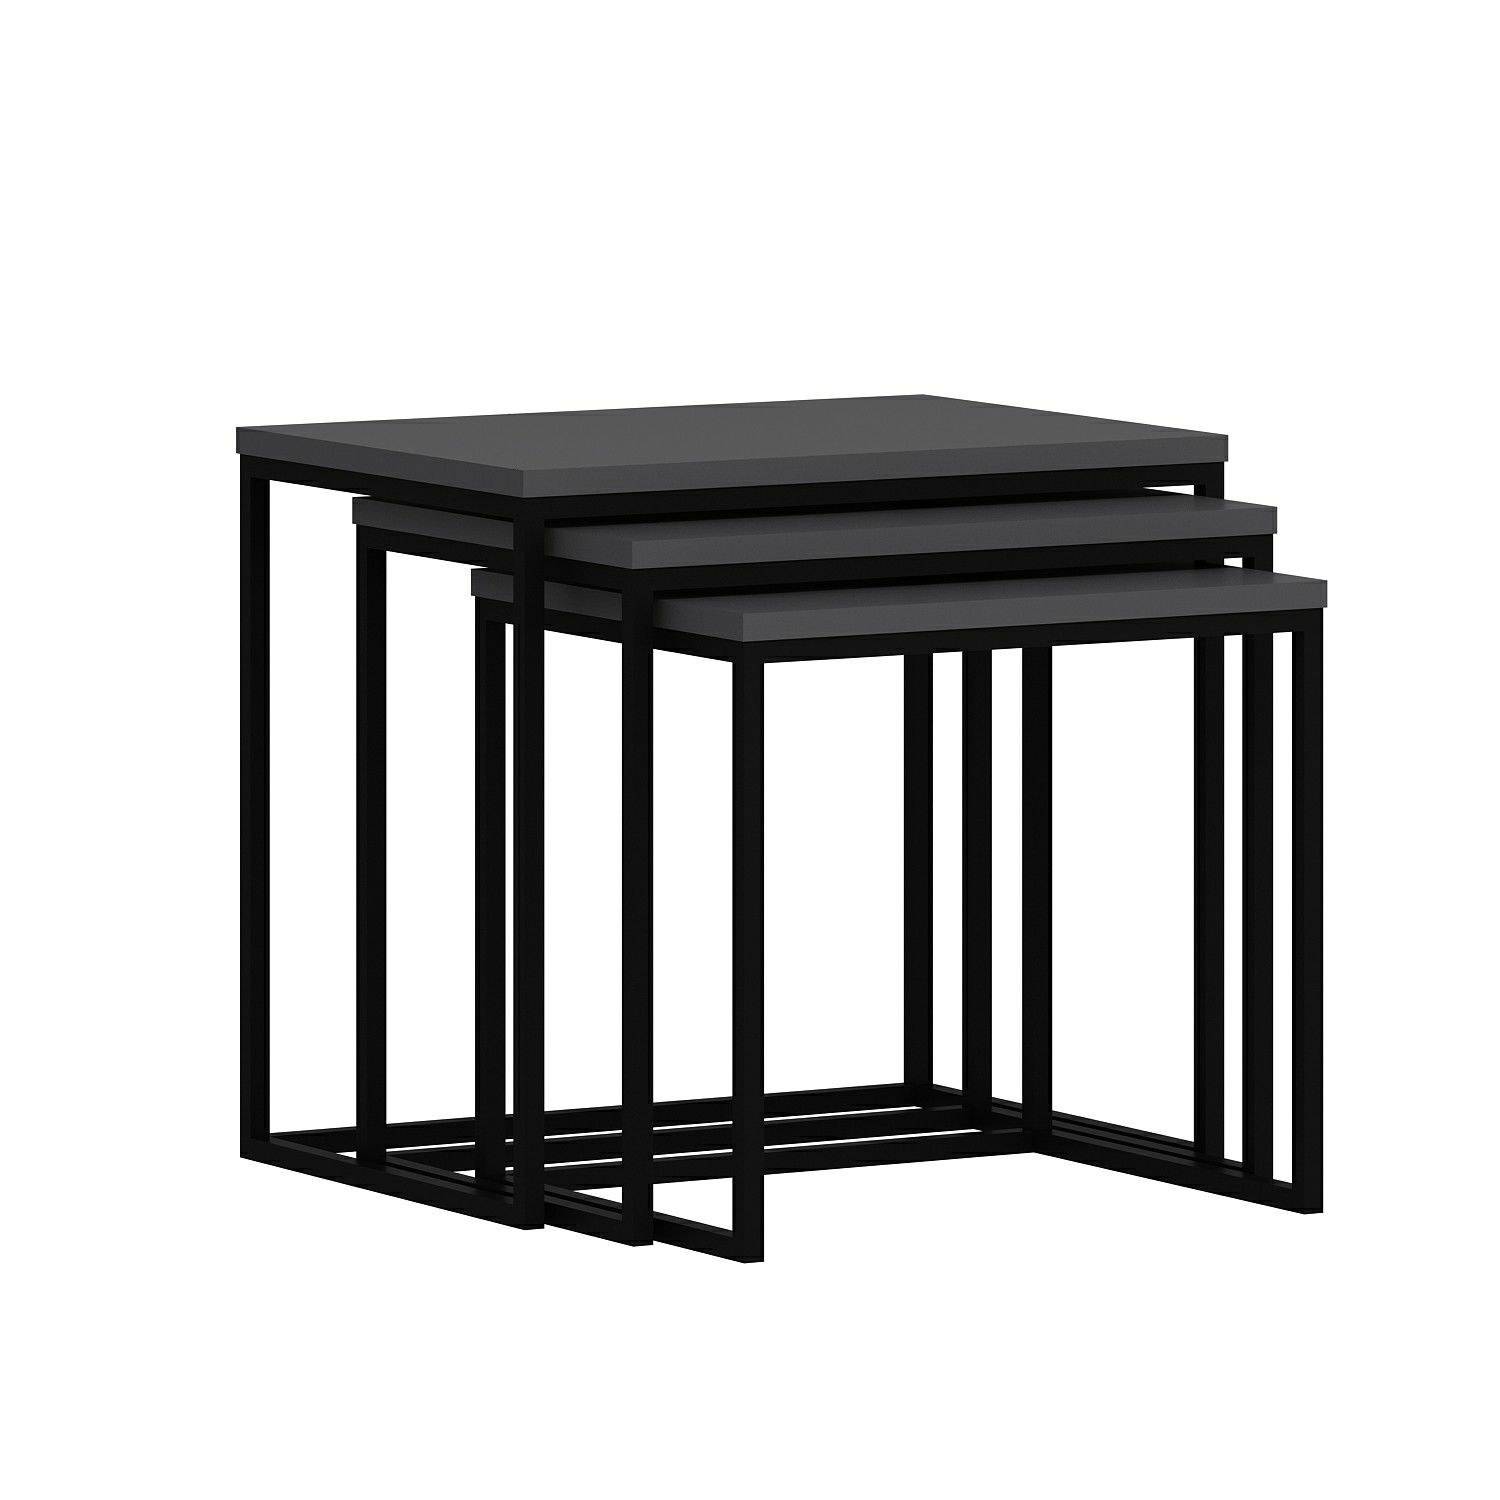 Set di 3 tavolini in stile industriale Gili, metallo nero e legno antracite